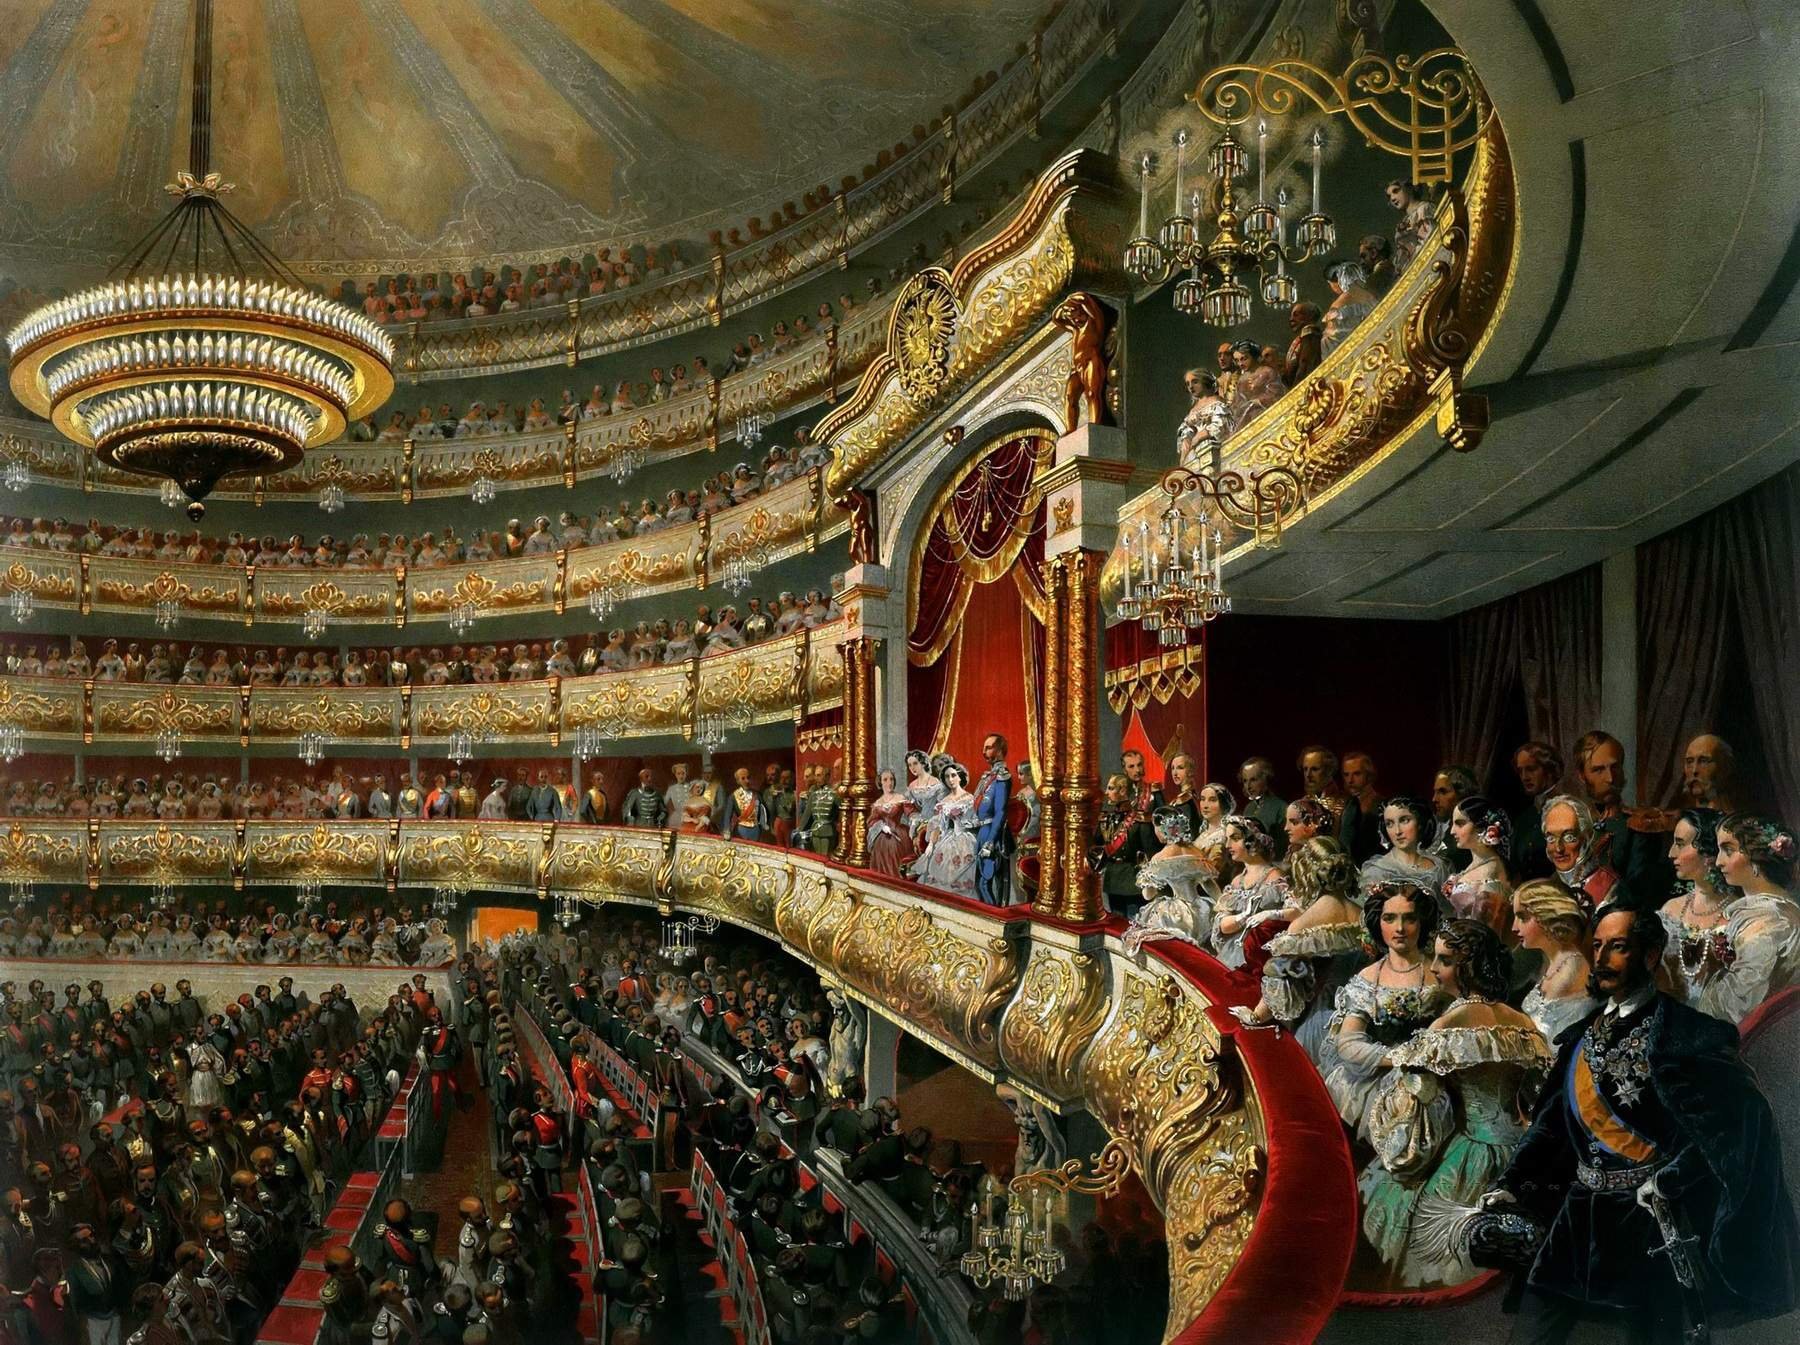 Театр второй половины 19 века